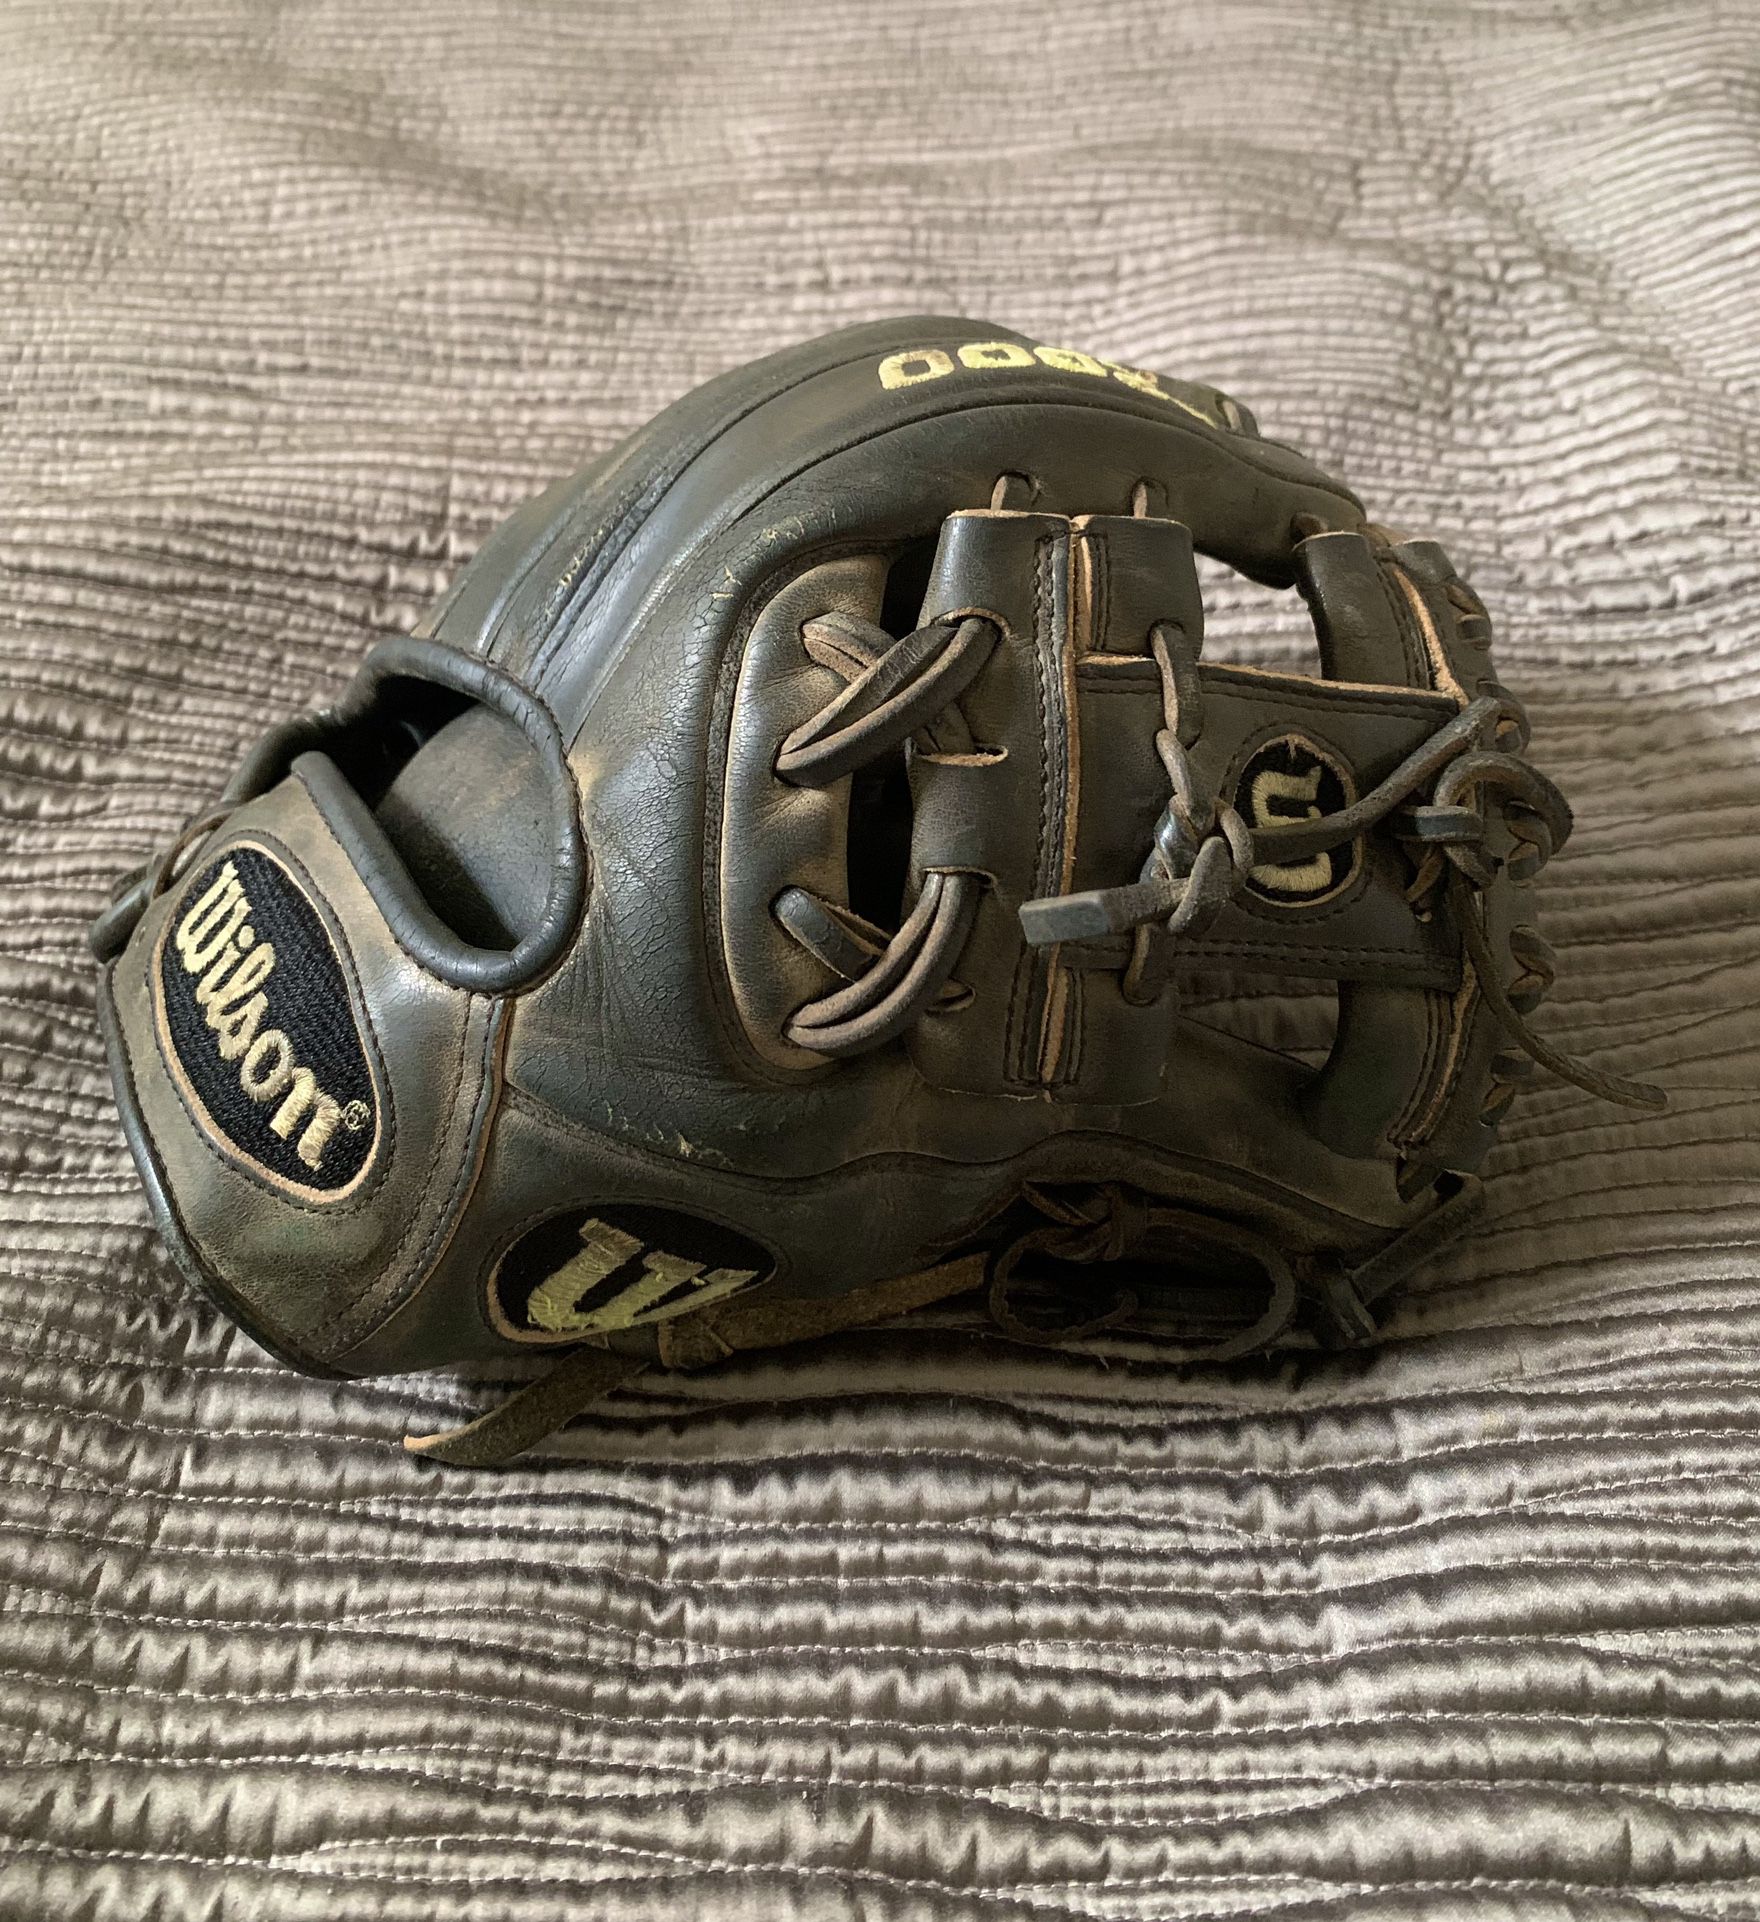 Wilson A2000 baseball glove 11.25